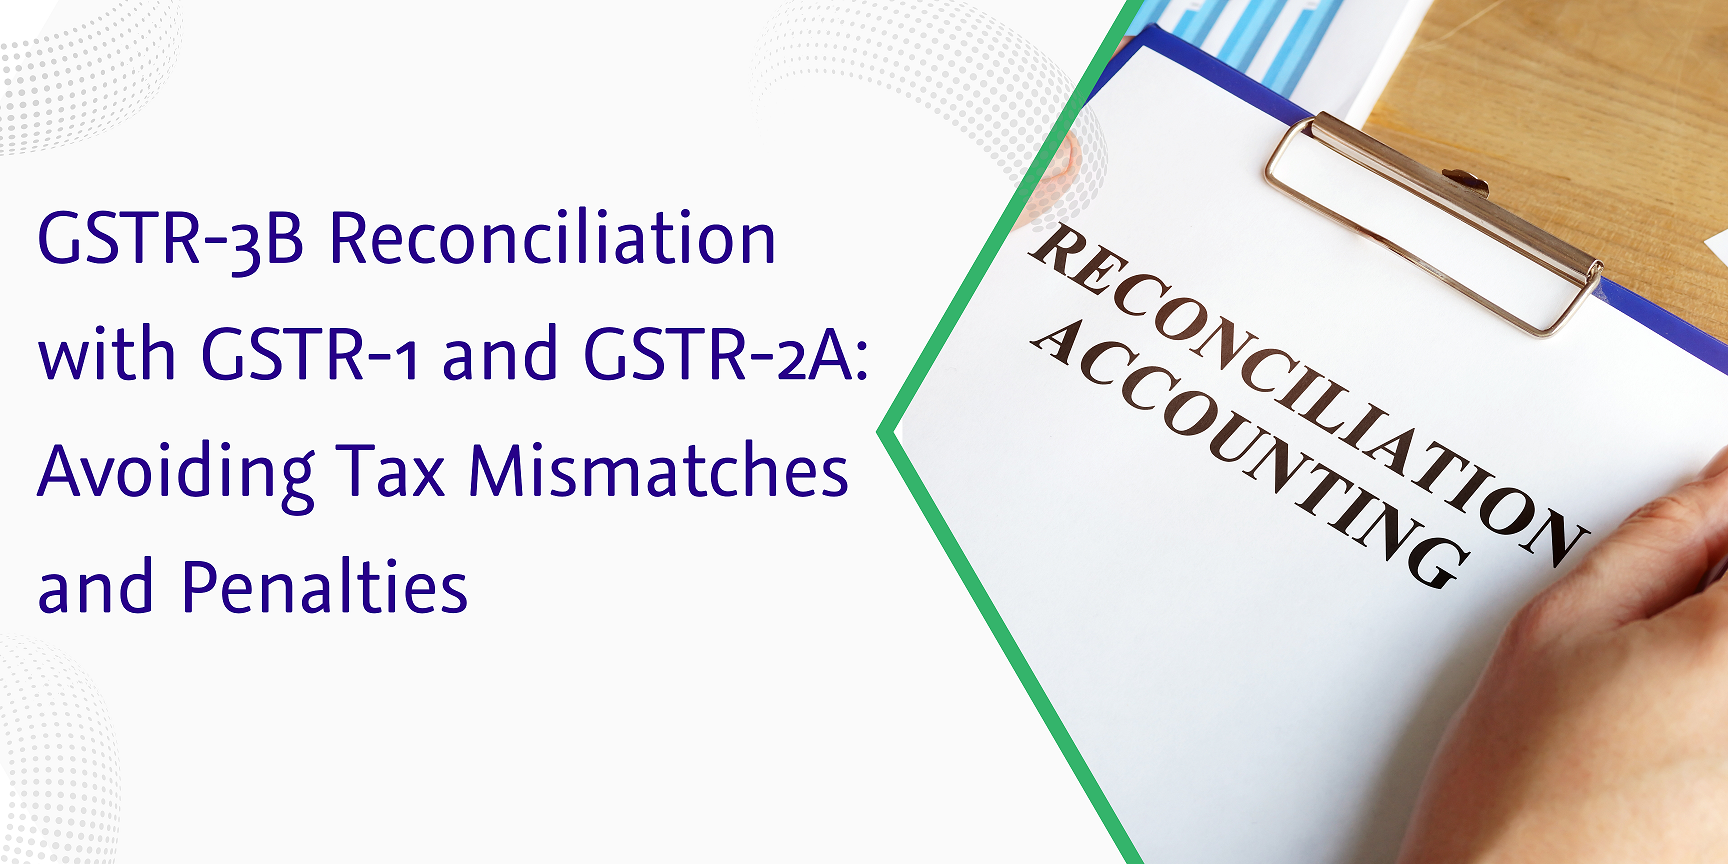 gstr 3b reconciliation with gstr 1 and gstr 2a